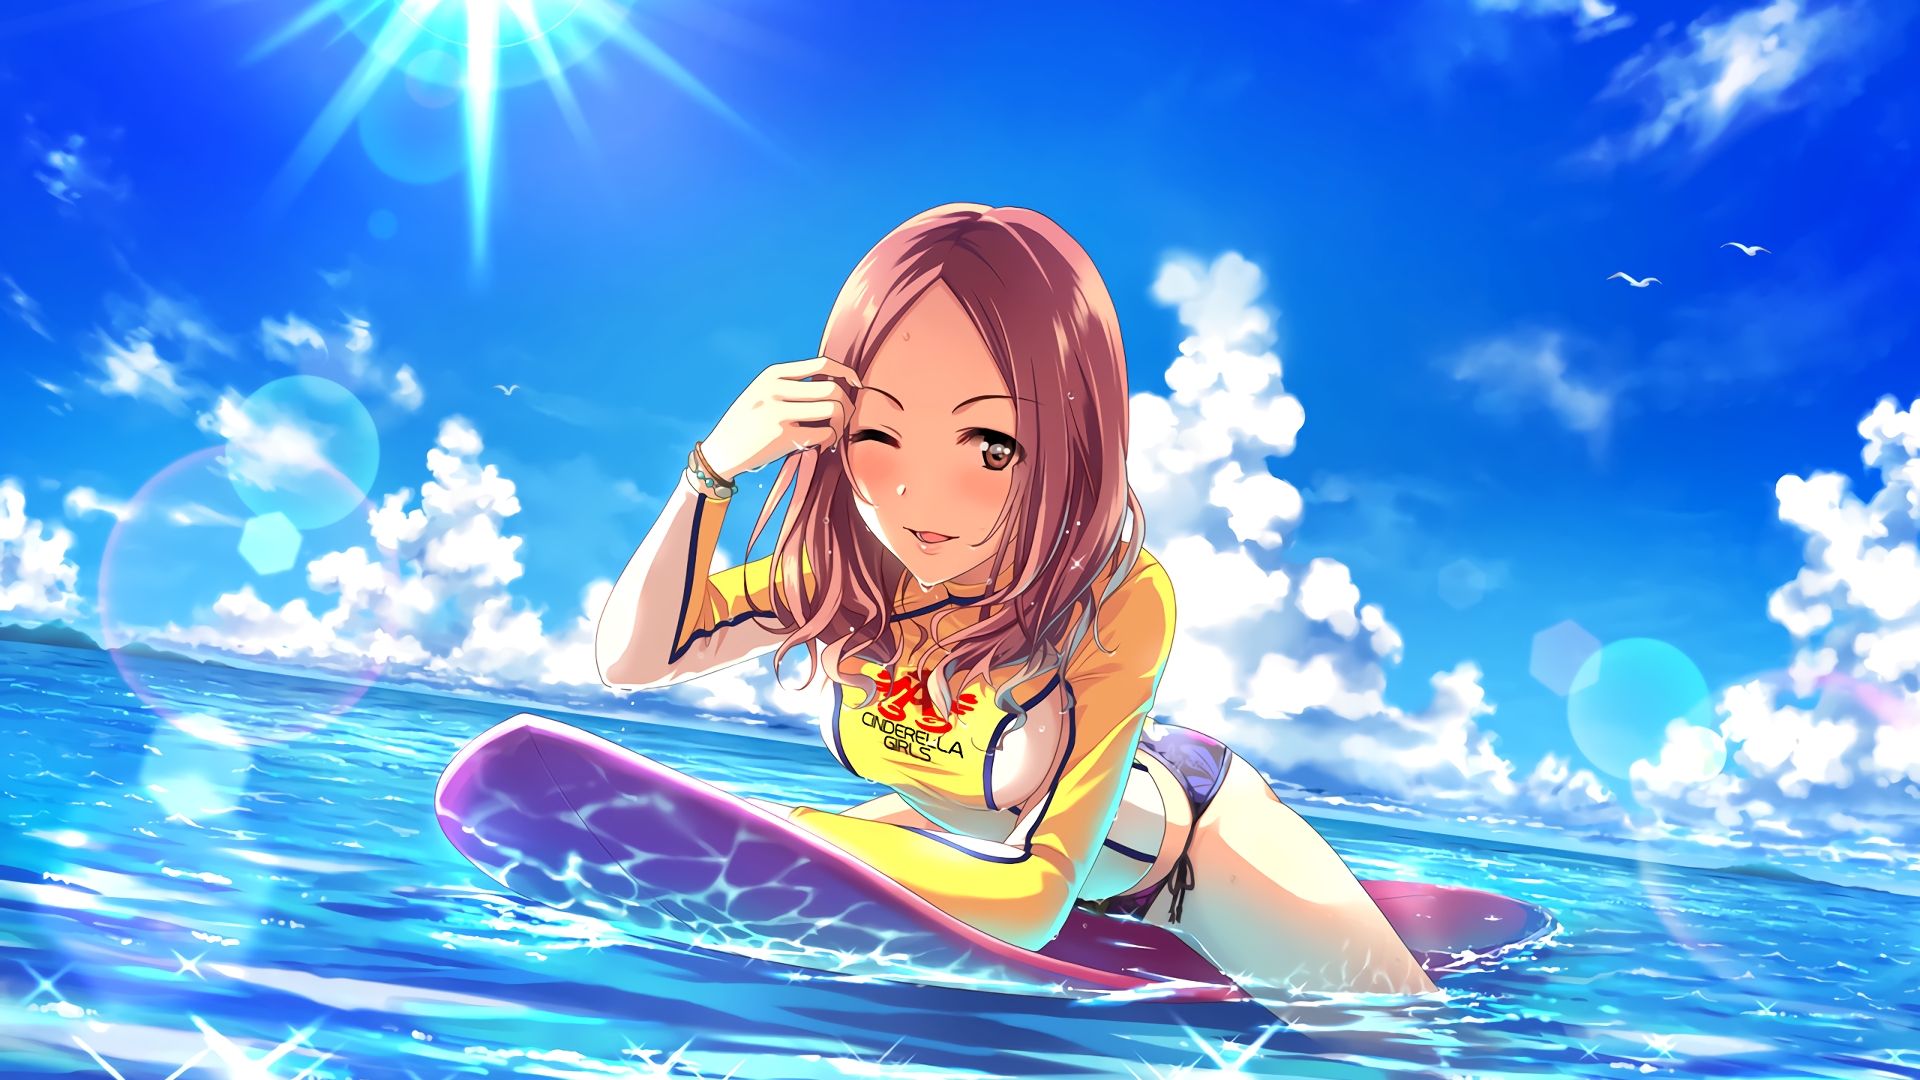 Wallpaper Marina Sawada, surfer, anime girl